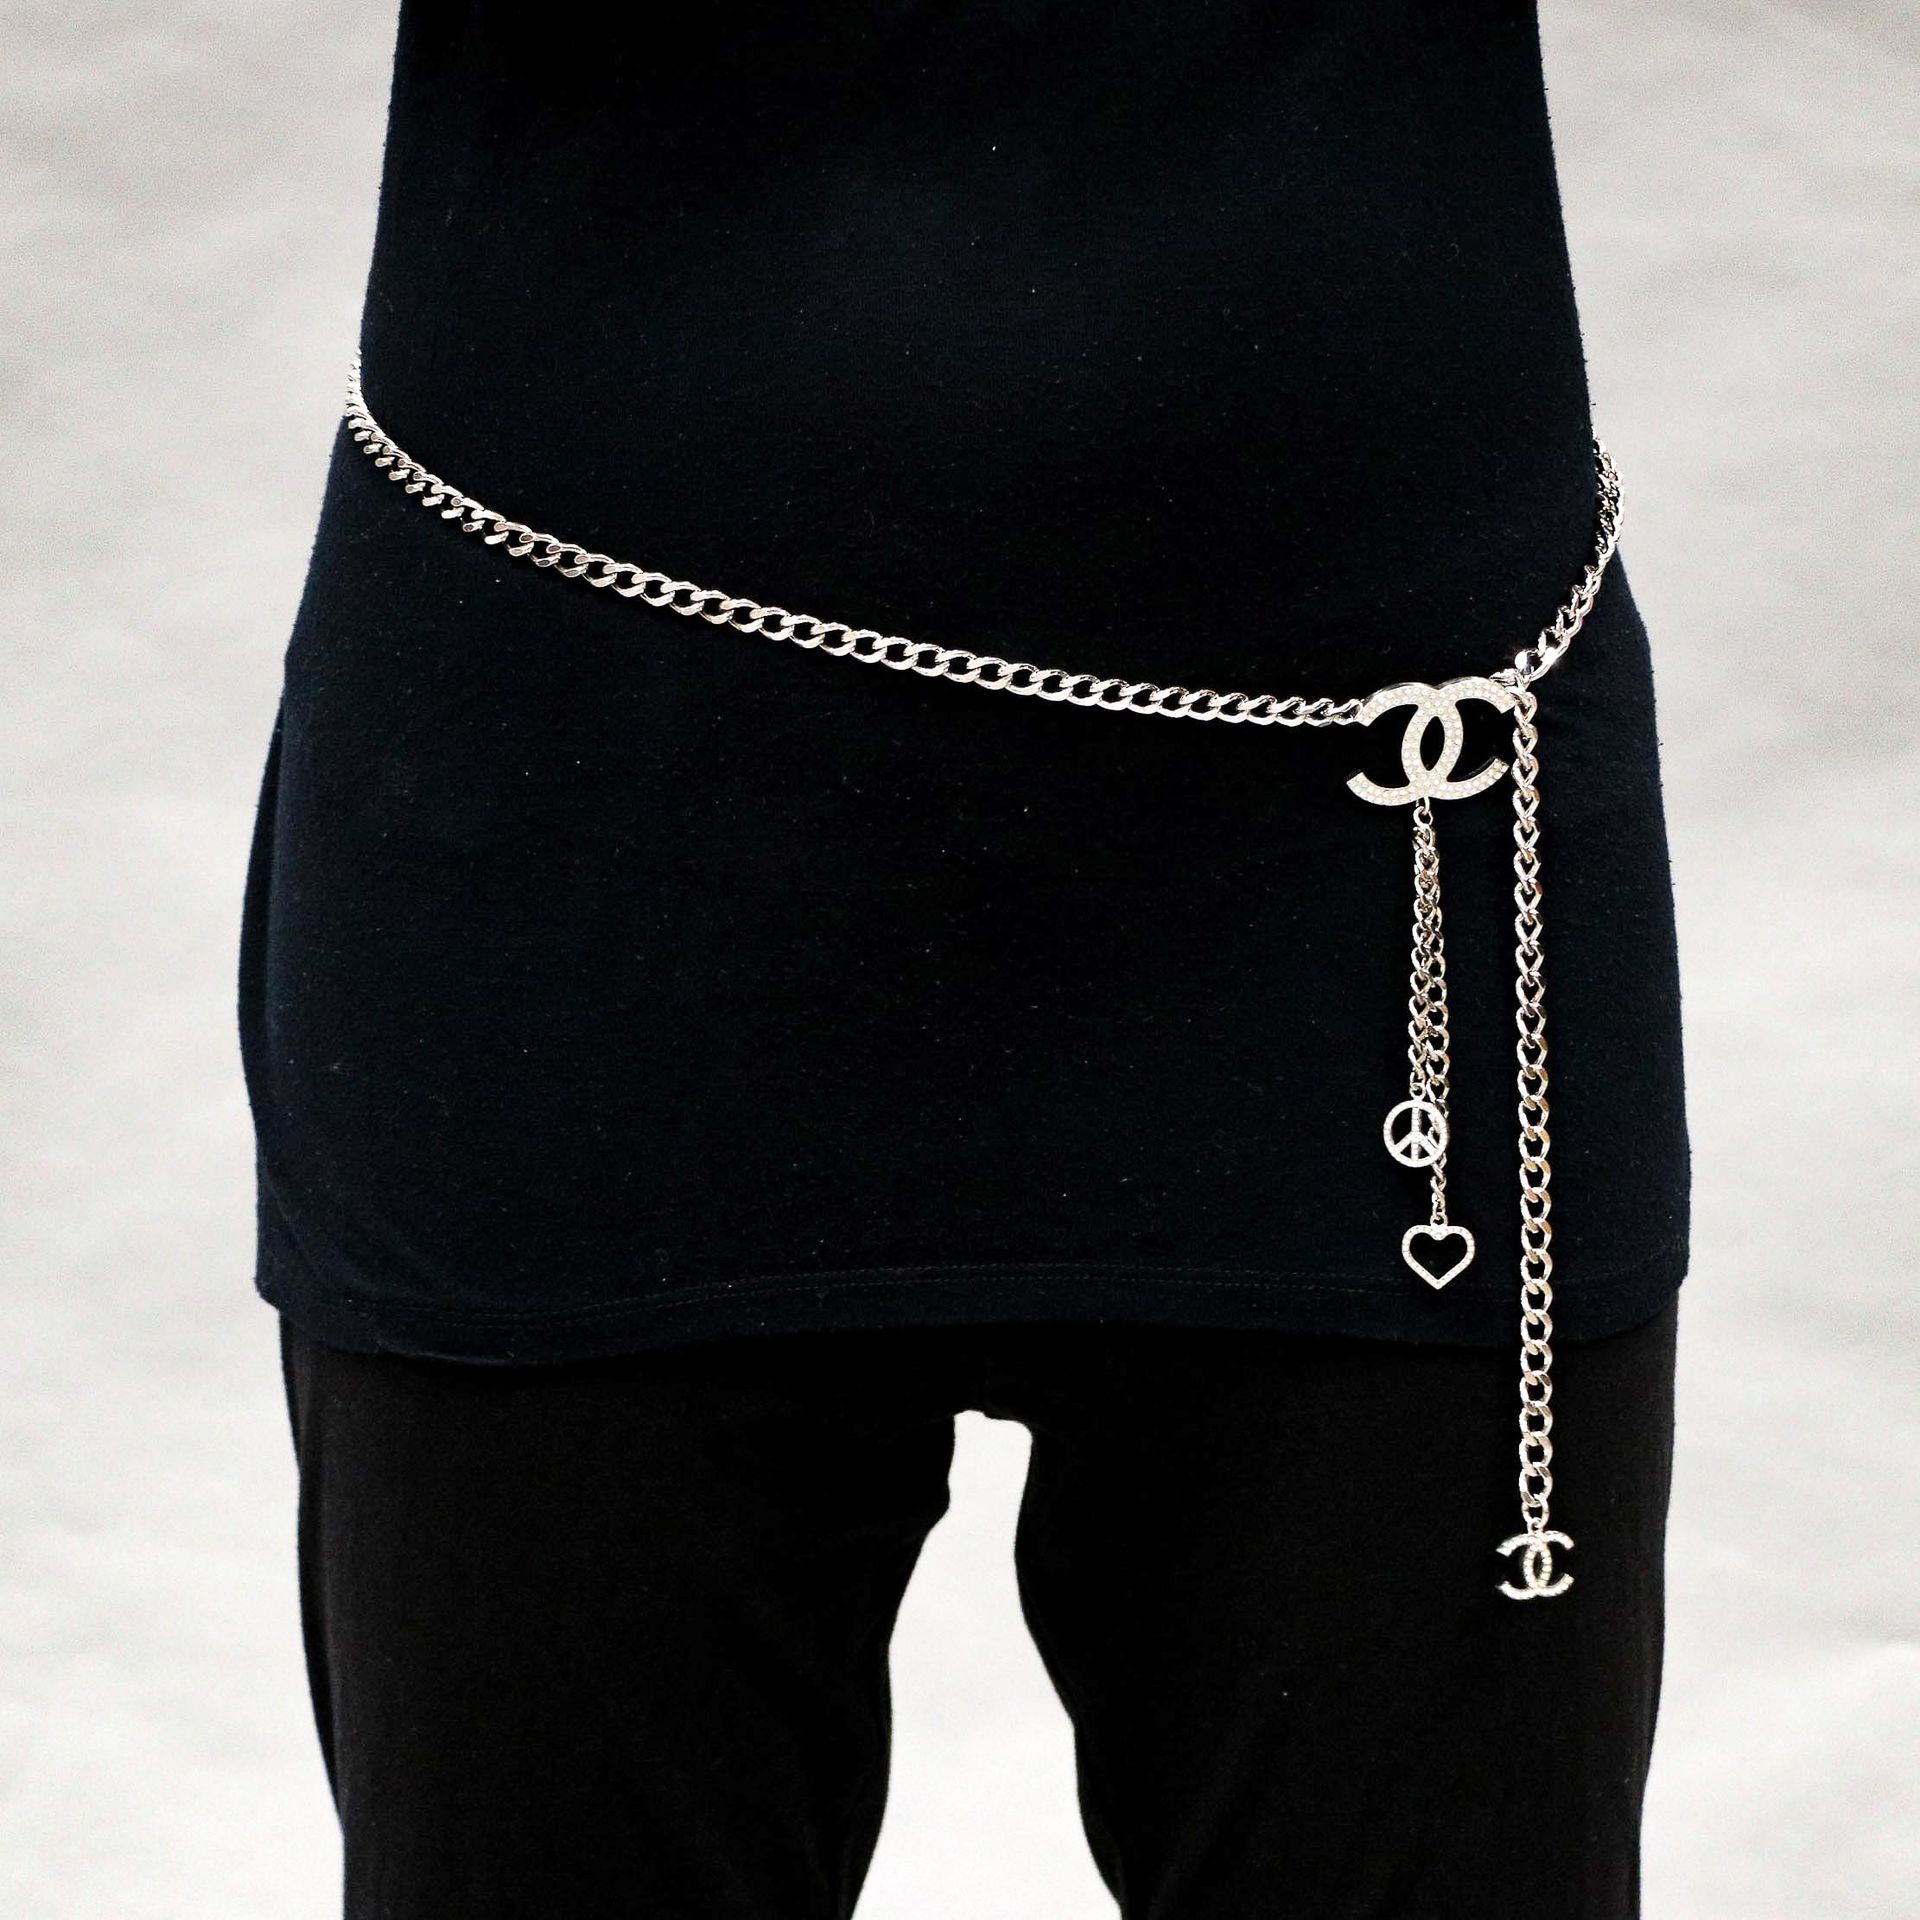 Null 香奈儿 - 约2008年 - 镀银金属和水钻装饰的皮带或项链，上面有香奈儿首字母、和平之爱和心形图案 - 长：99厘米